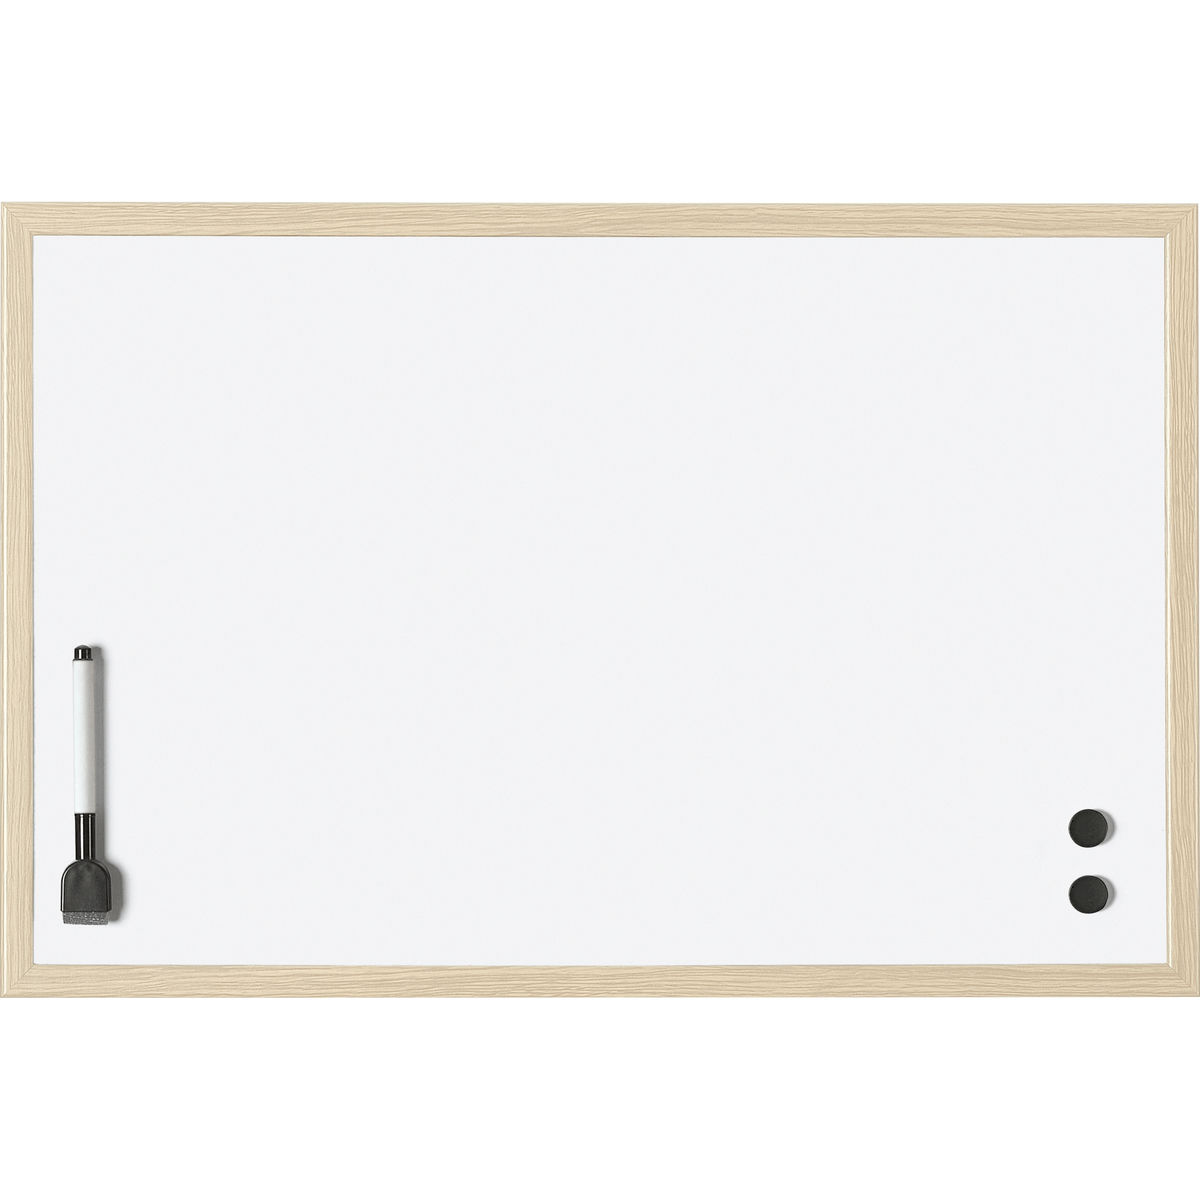 MAGNETOPLAN Tableau blanc avec cadre en bois, 590 x 390 mm, acier